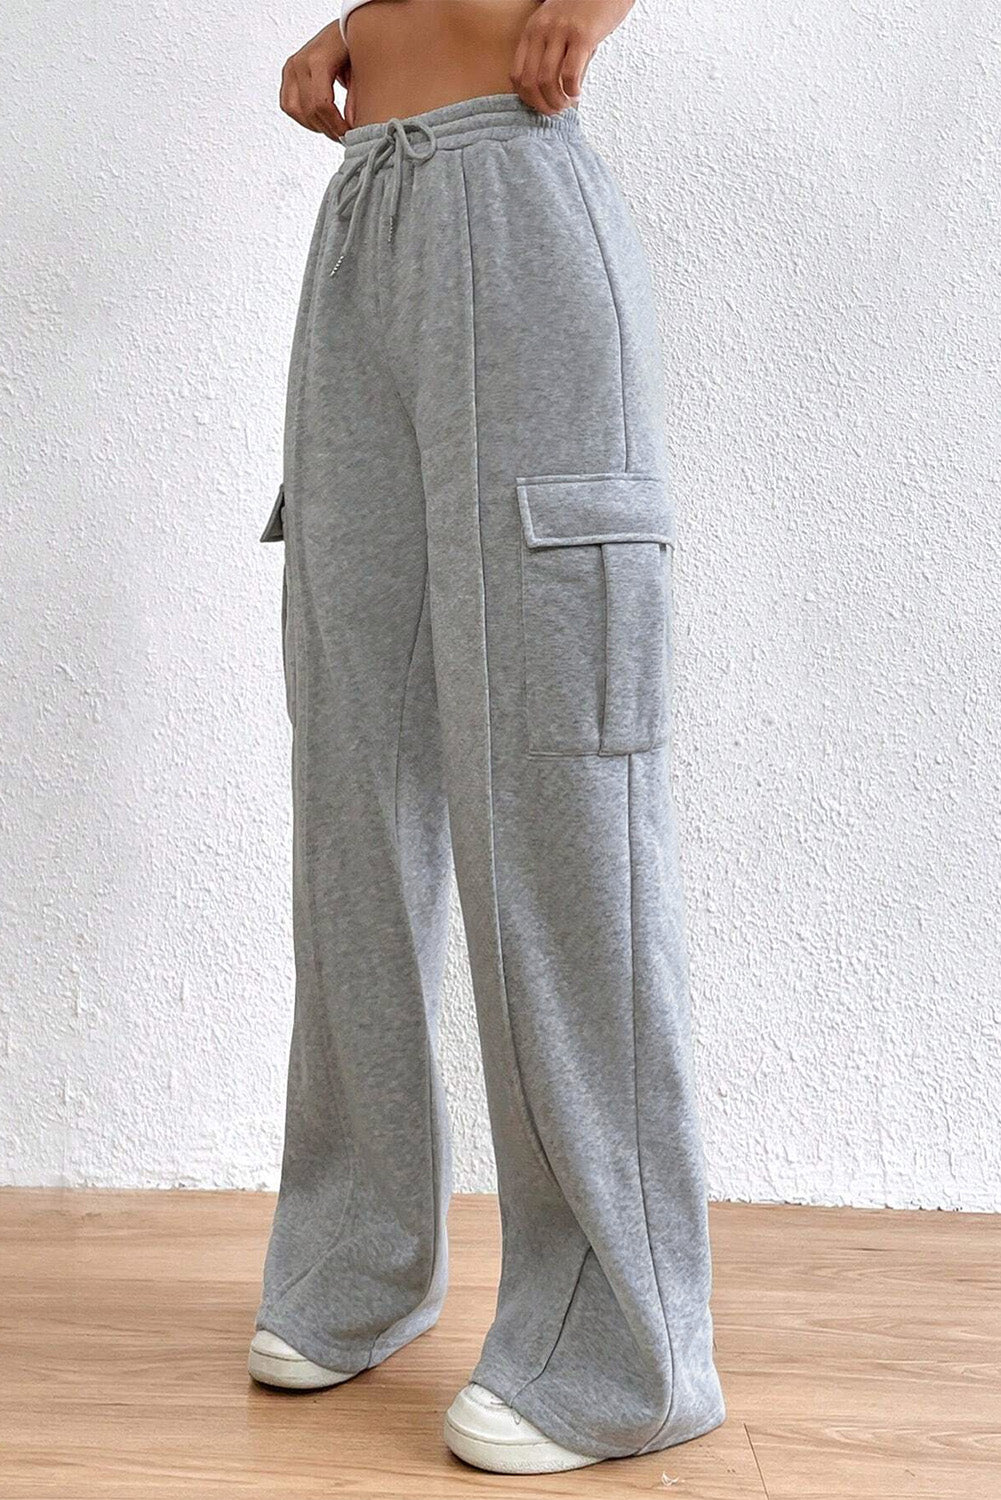 Pantaloni sportivi cargo grigio chiaro con coulisse in vita